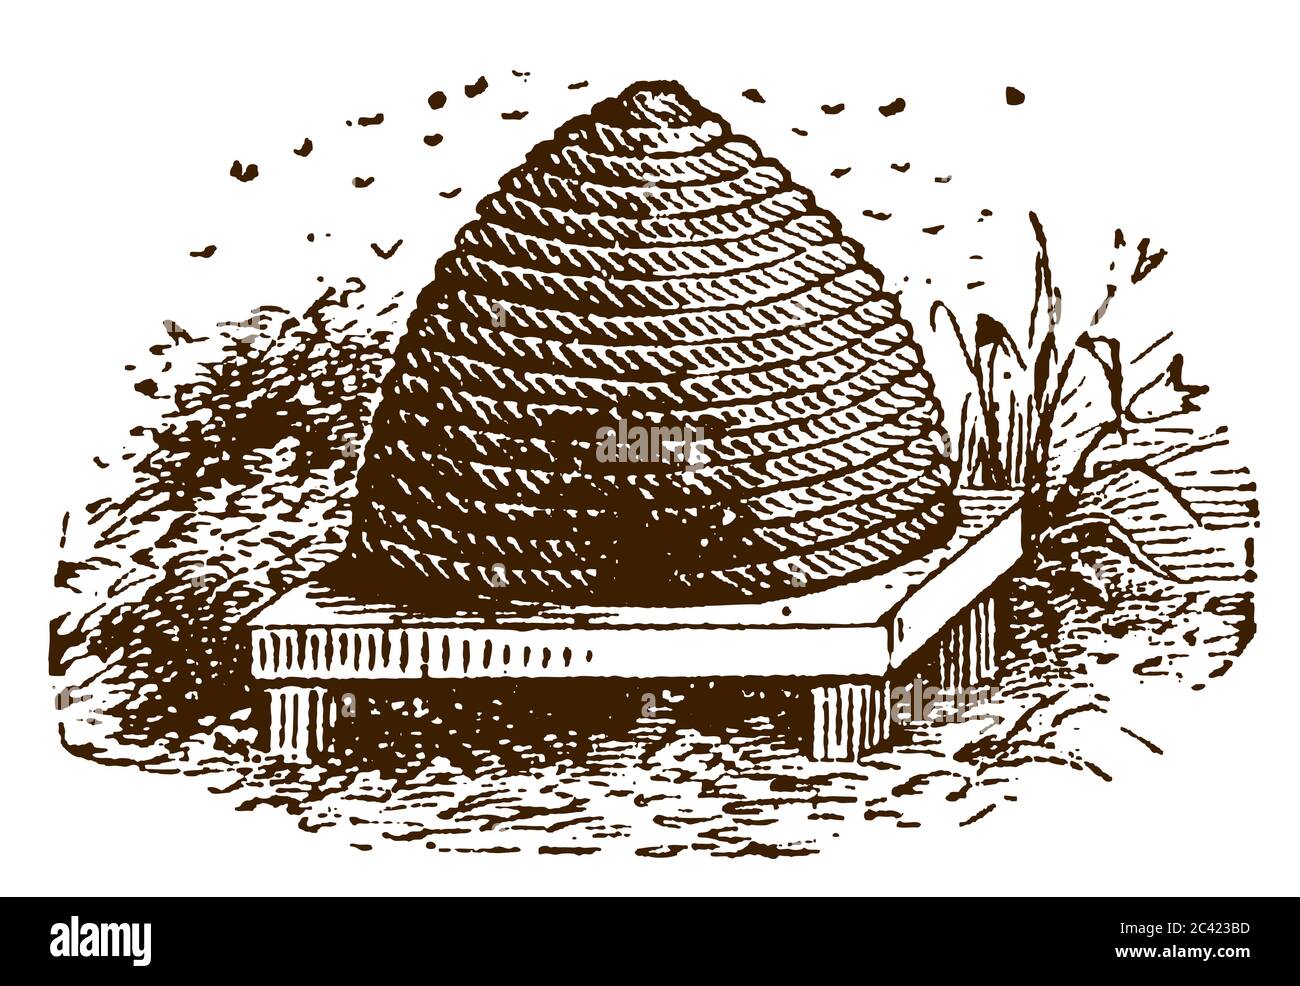 Ruche traditionnelle ou skep avec des abeilles essaimandes, après une gravure antique du XIXe siècle Illustration de Vecteur